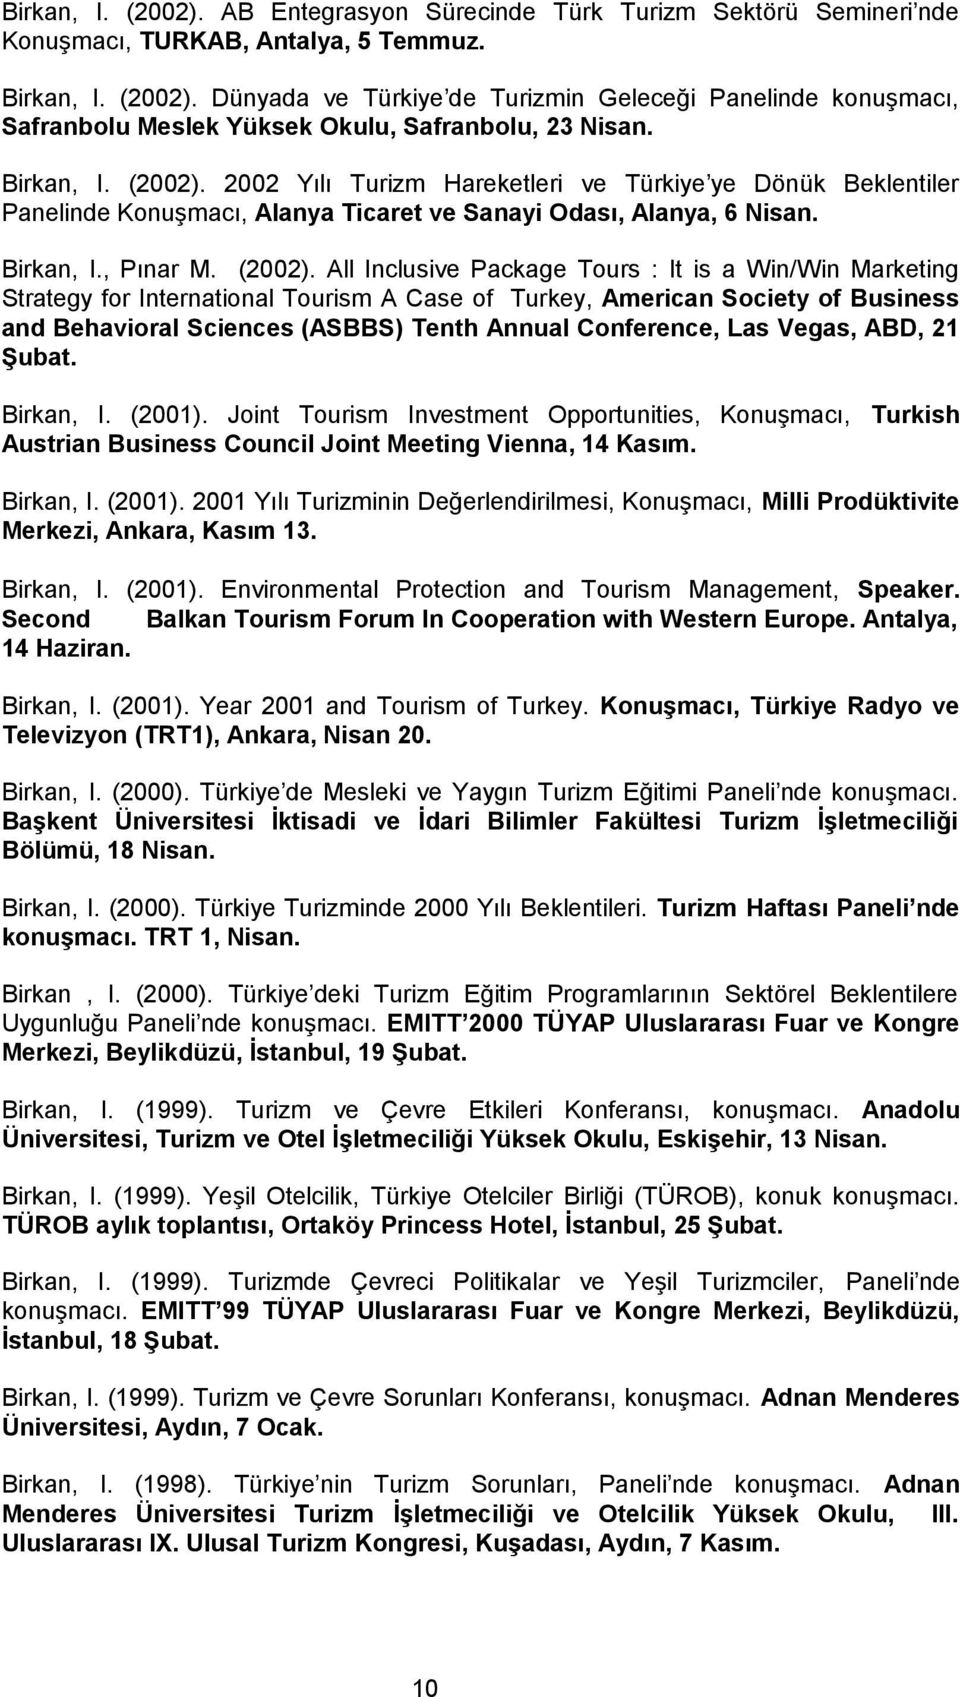 2002 Yılı Turizm Hareketleri ve Türkiye ye Dönük Beklentiler Panelinde Konuşmacı, Alanya Ticaret ve Sanayi Odası, Alanya, 6 Nisan. Birkan, I., Pınar M. (2002).